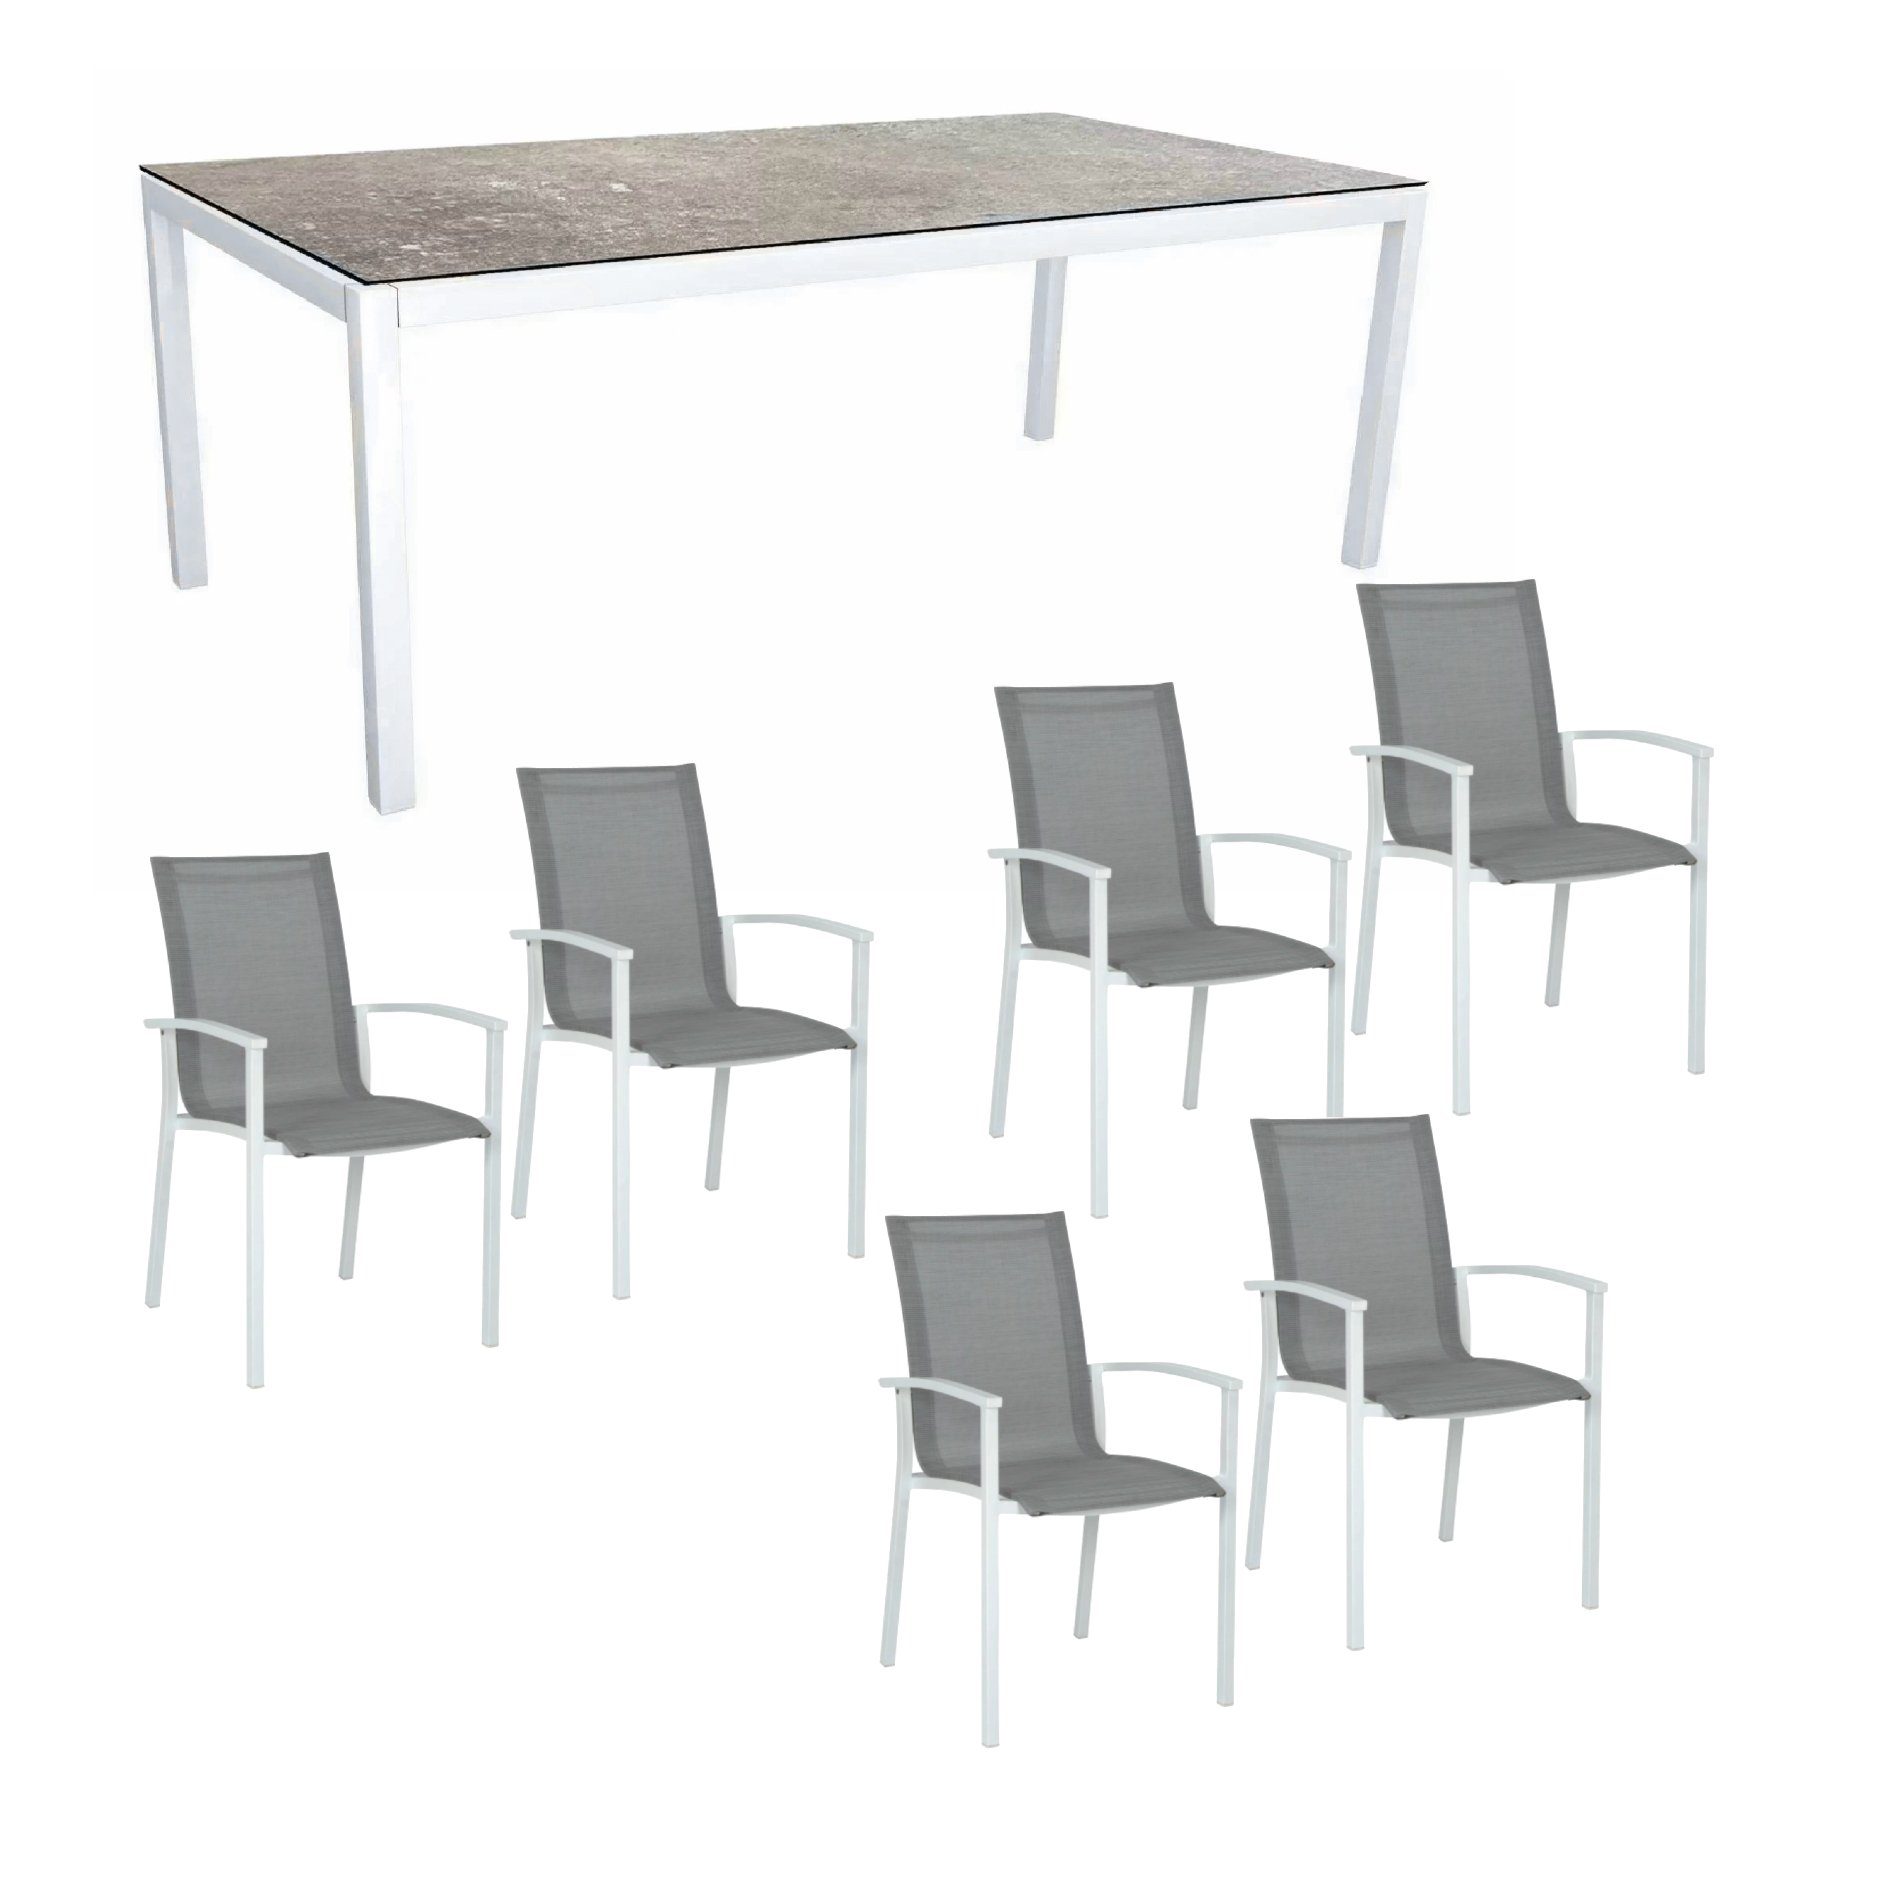 Stern Gartenmöbel-Set "Evoee", Gestelle Aluminium weiß, Tischplatte HPL Vintage Stone 200x100 cm, Sitz- und Rückenfläche Textilgewebe silberfarben